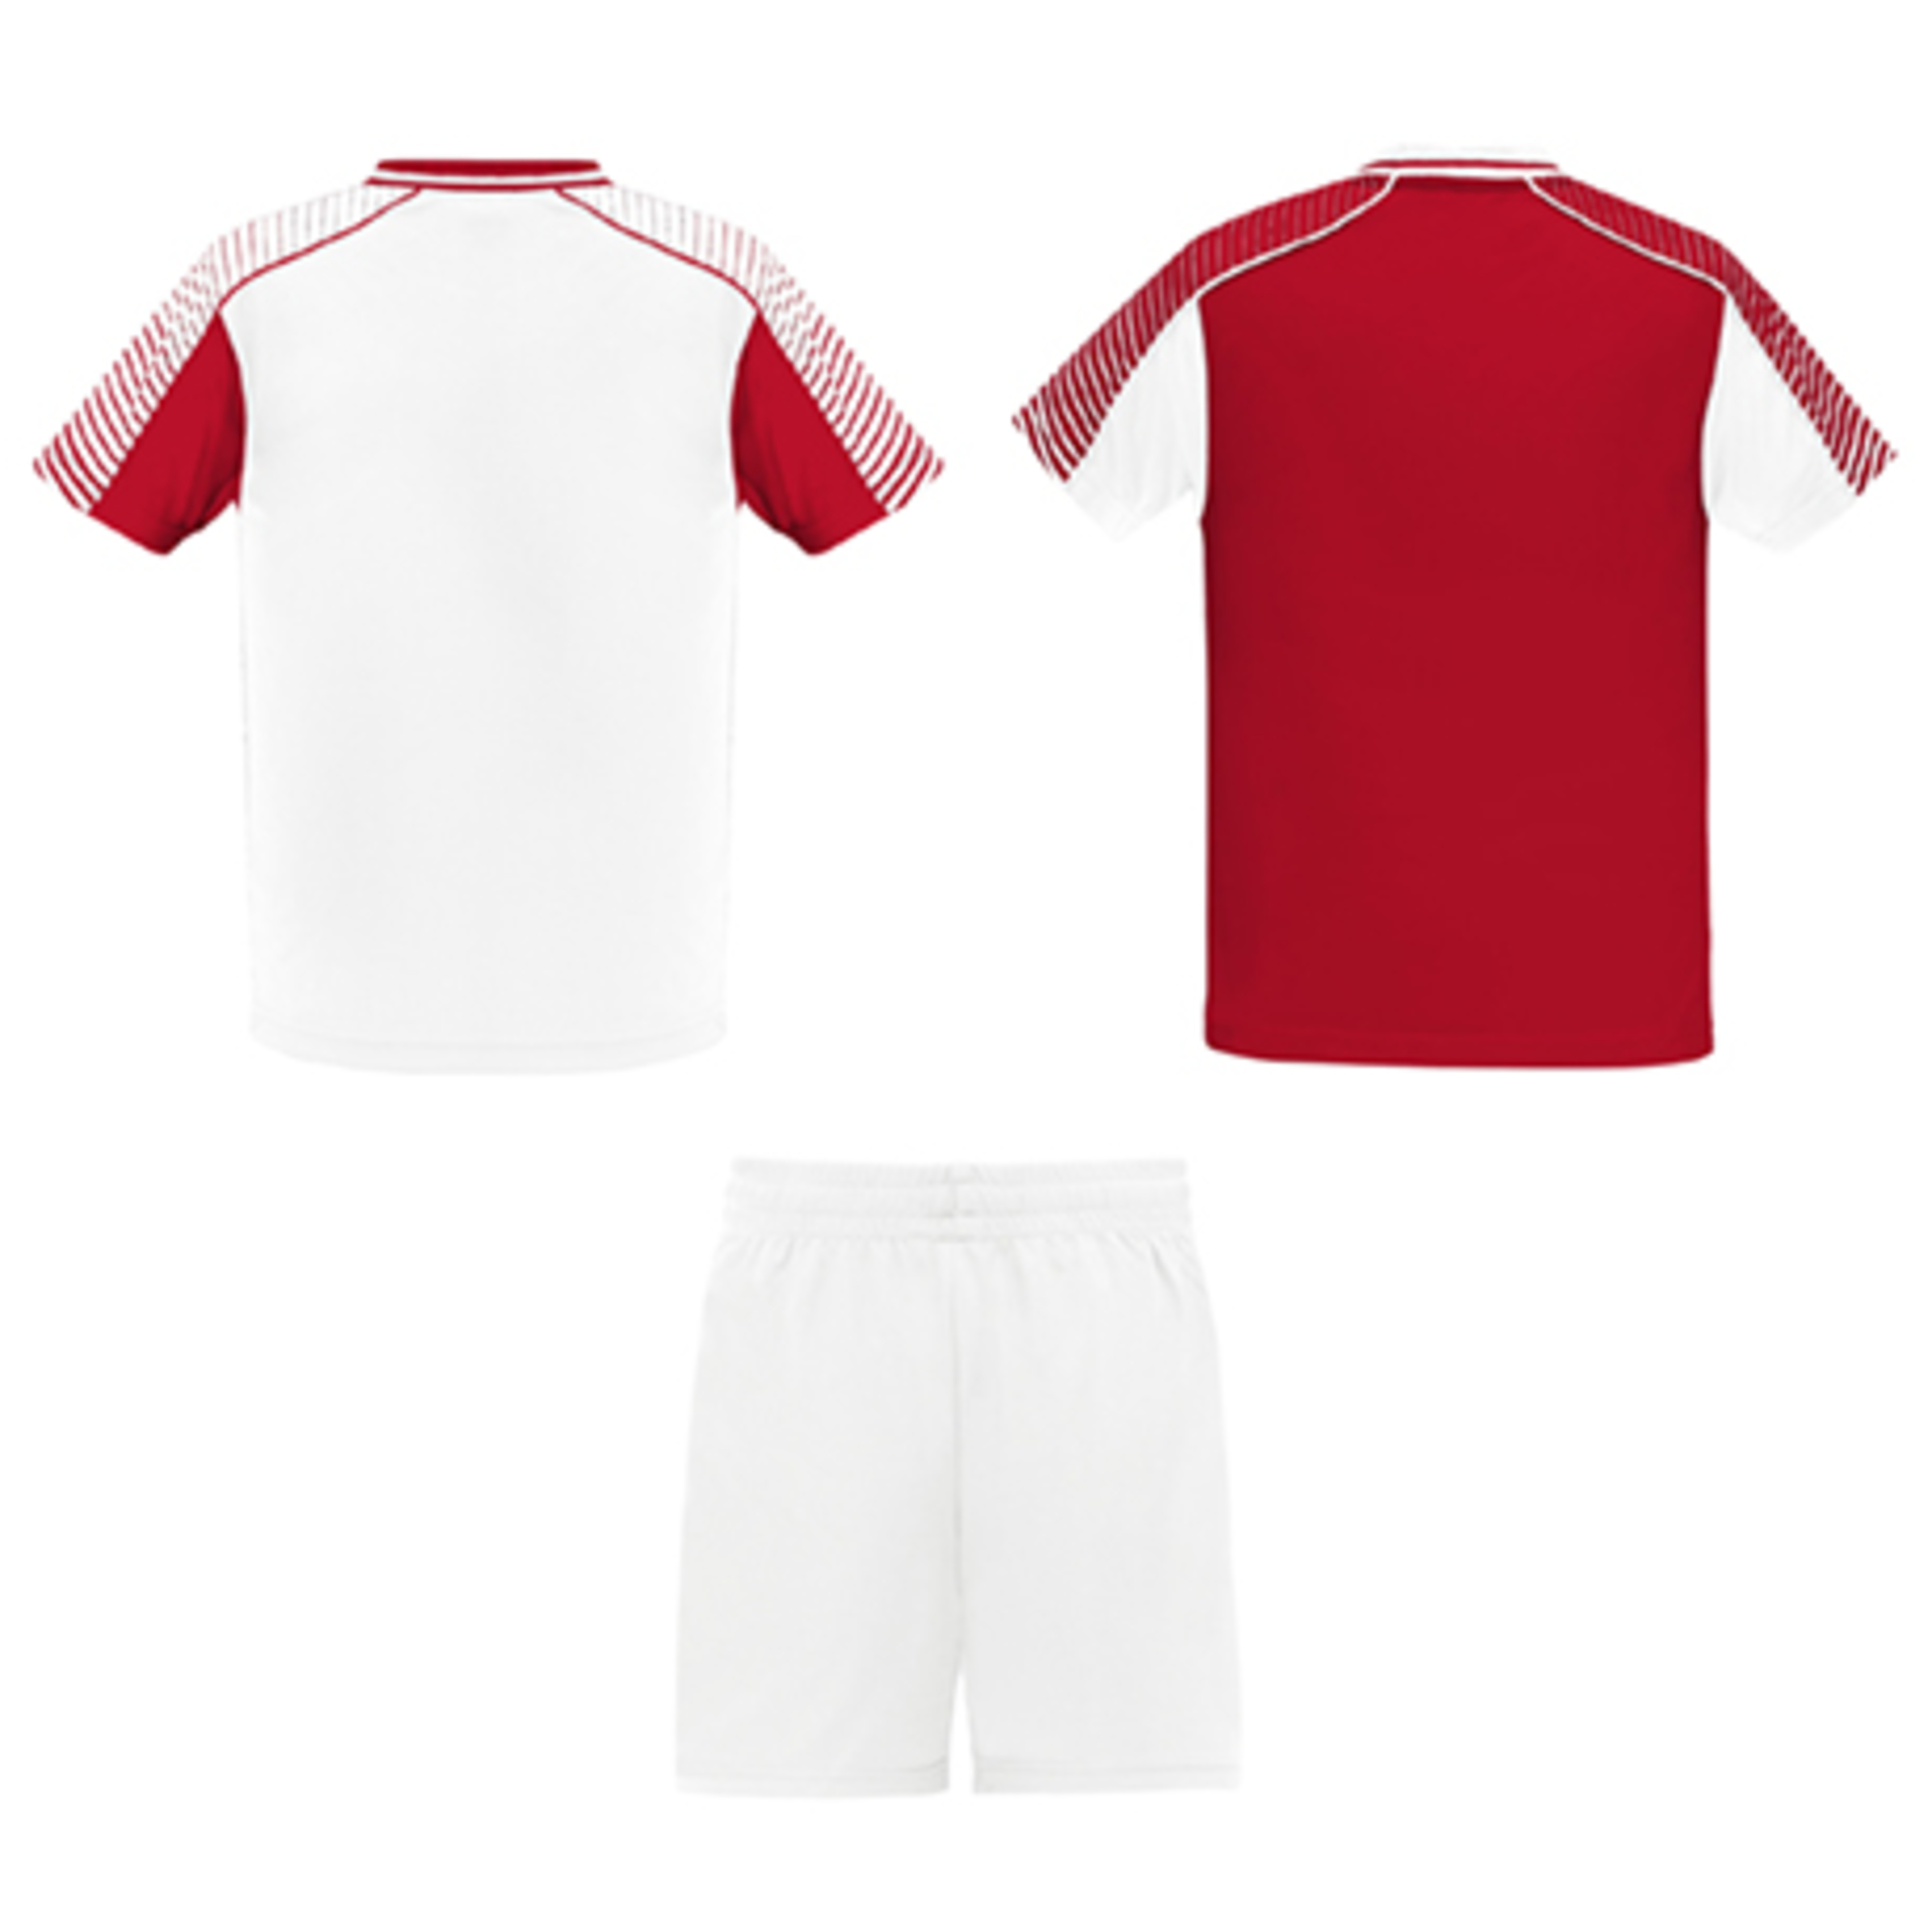 Conjunto Desportivo Roly Juve - Conjunto deportivo juve 2 camisetas y1 pantalón.- Equipaciones > Equipaciones futbol | Sport Zone MKP